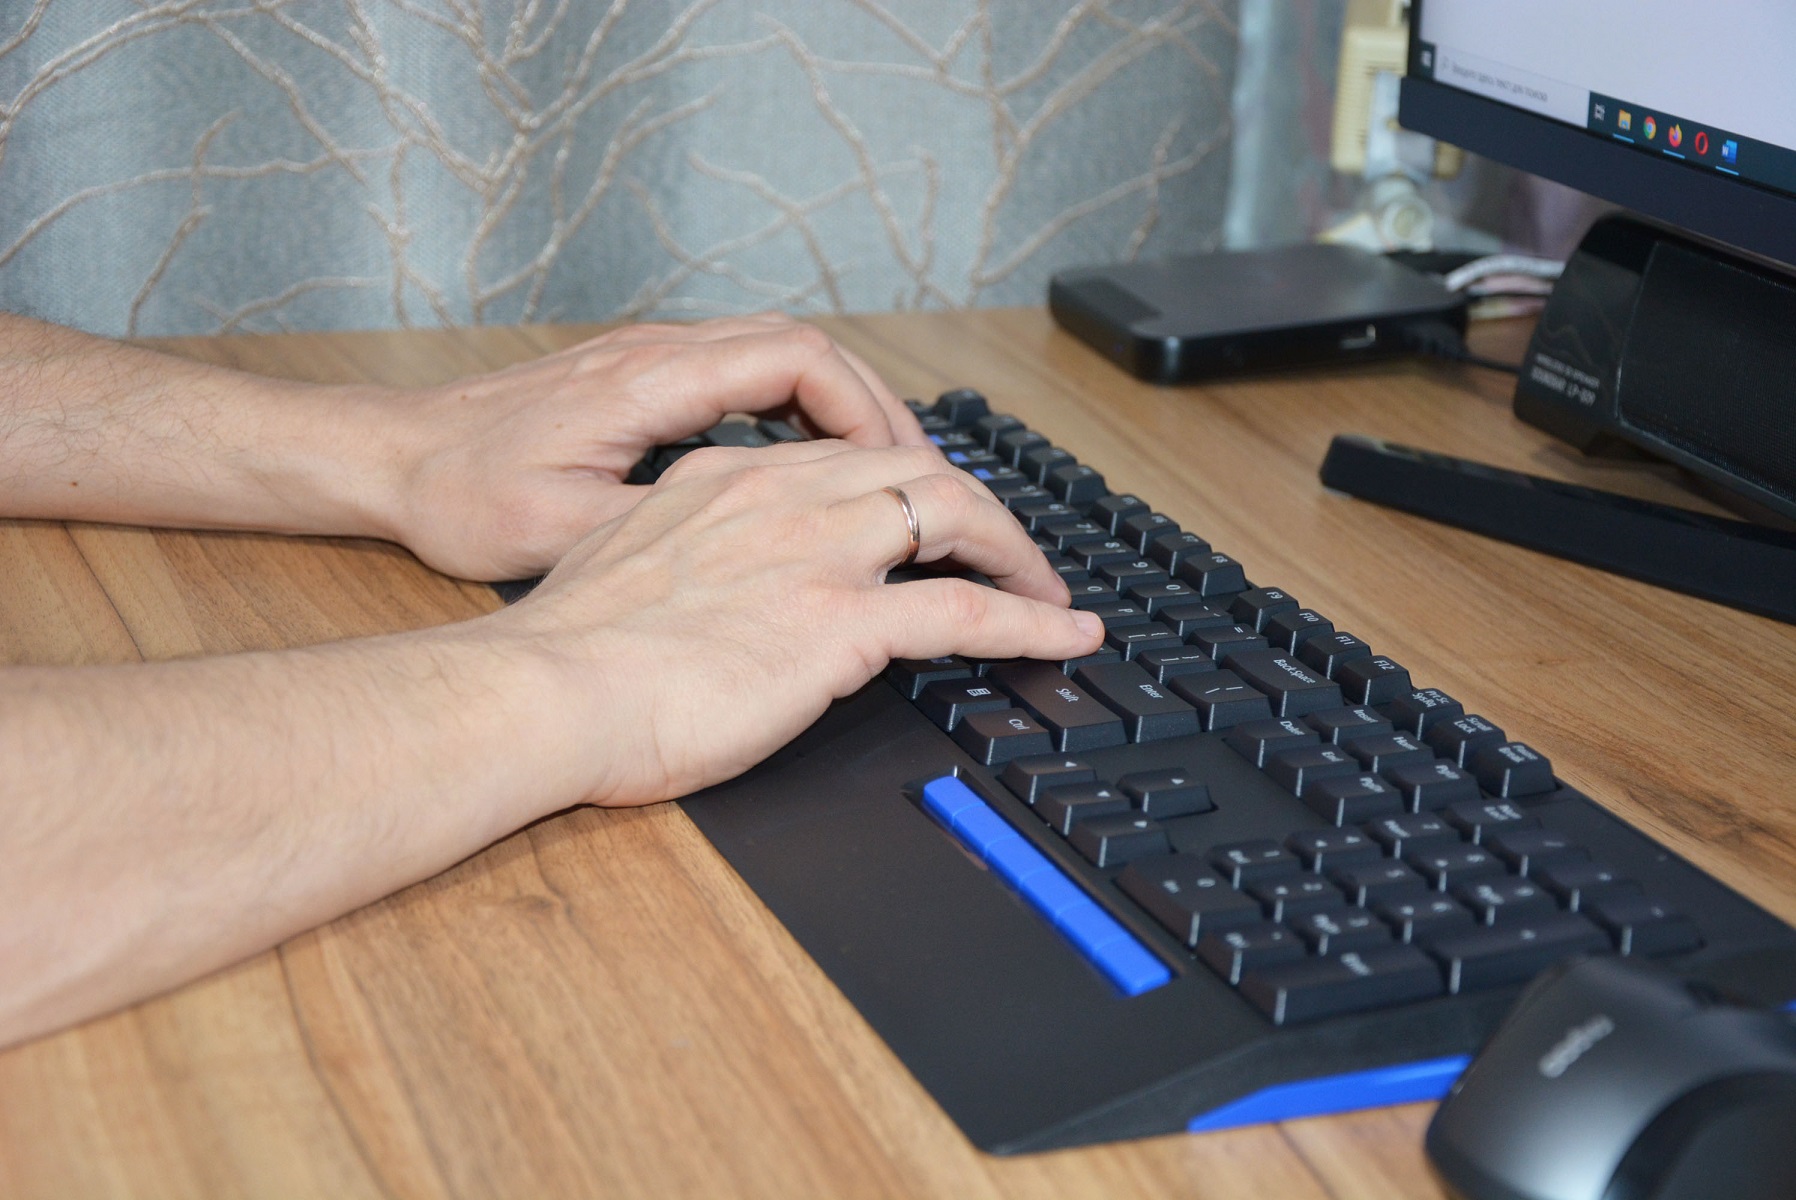 пабг на планшете с клавиатурой и мышкой фото 54